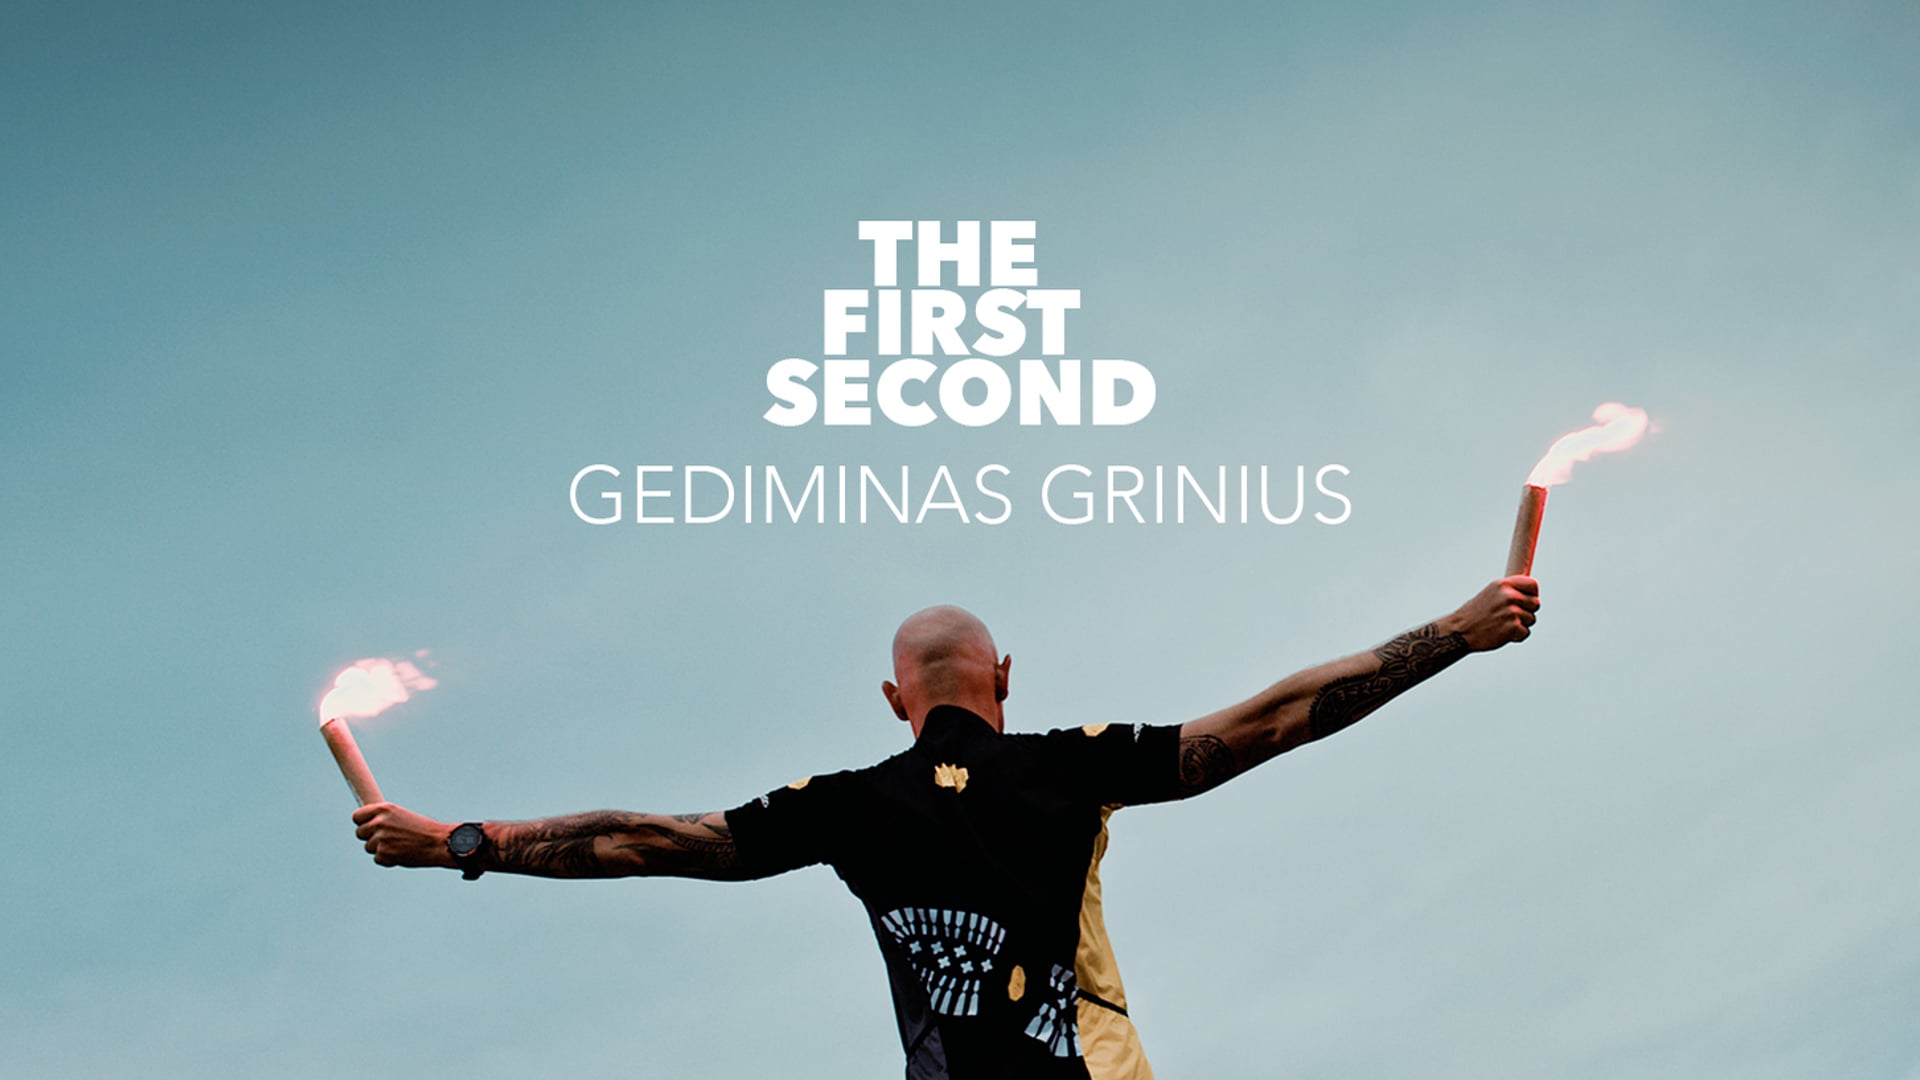 GEDIMINAS GRINIUS : THE FIRST SECOND